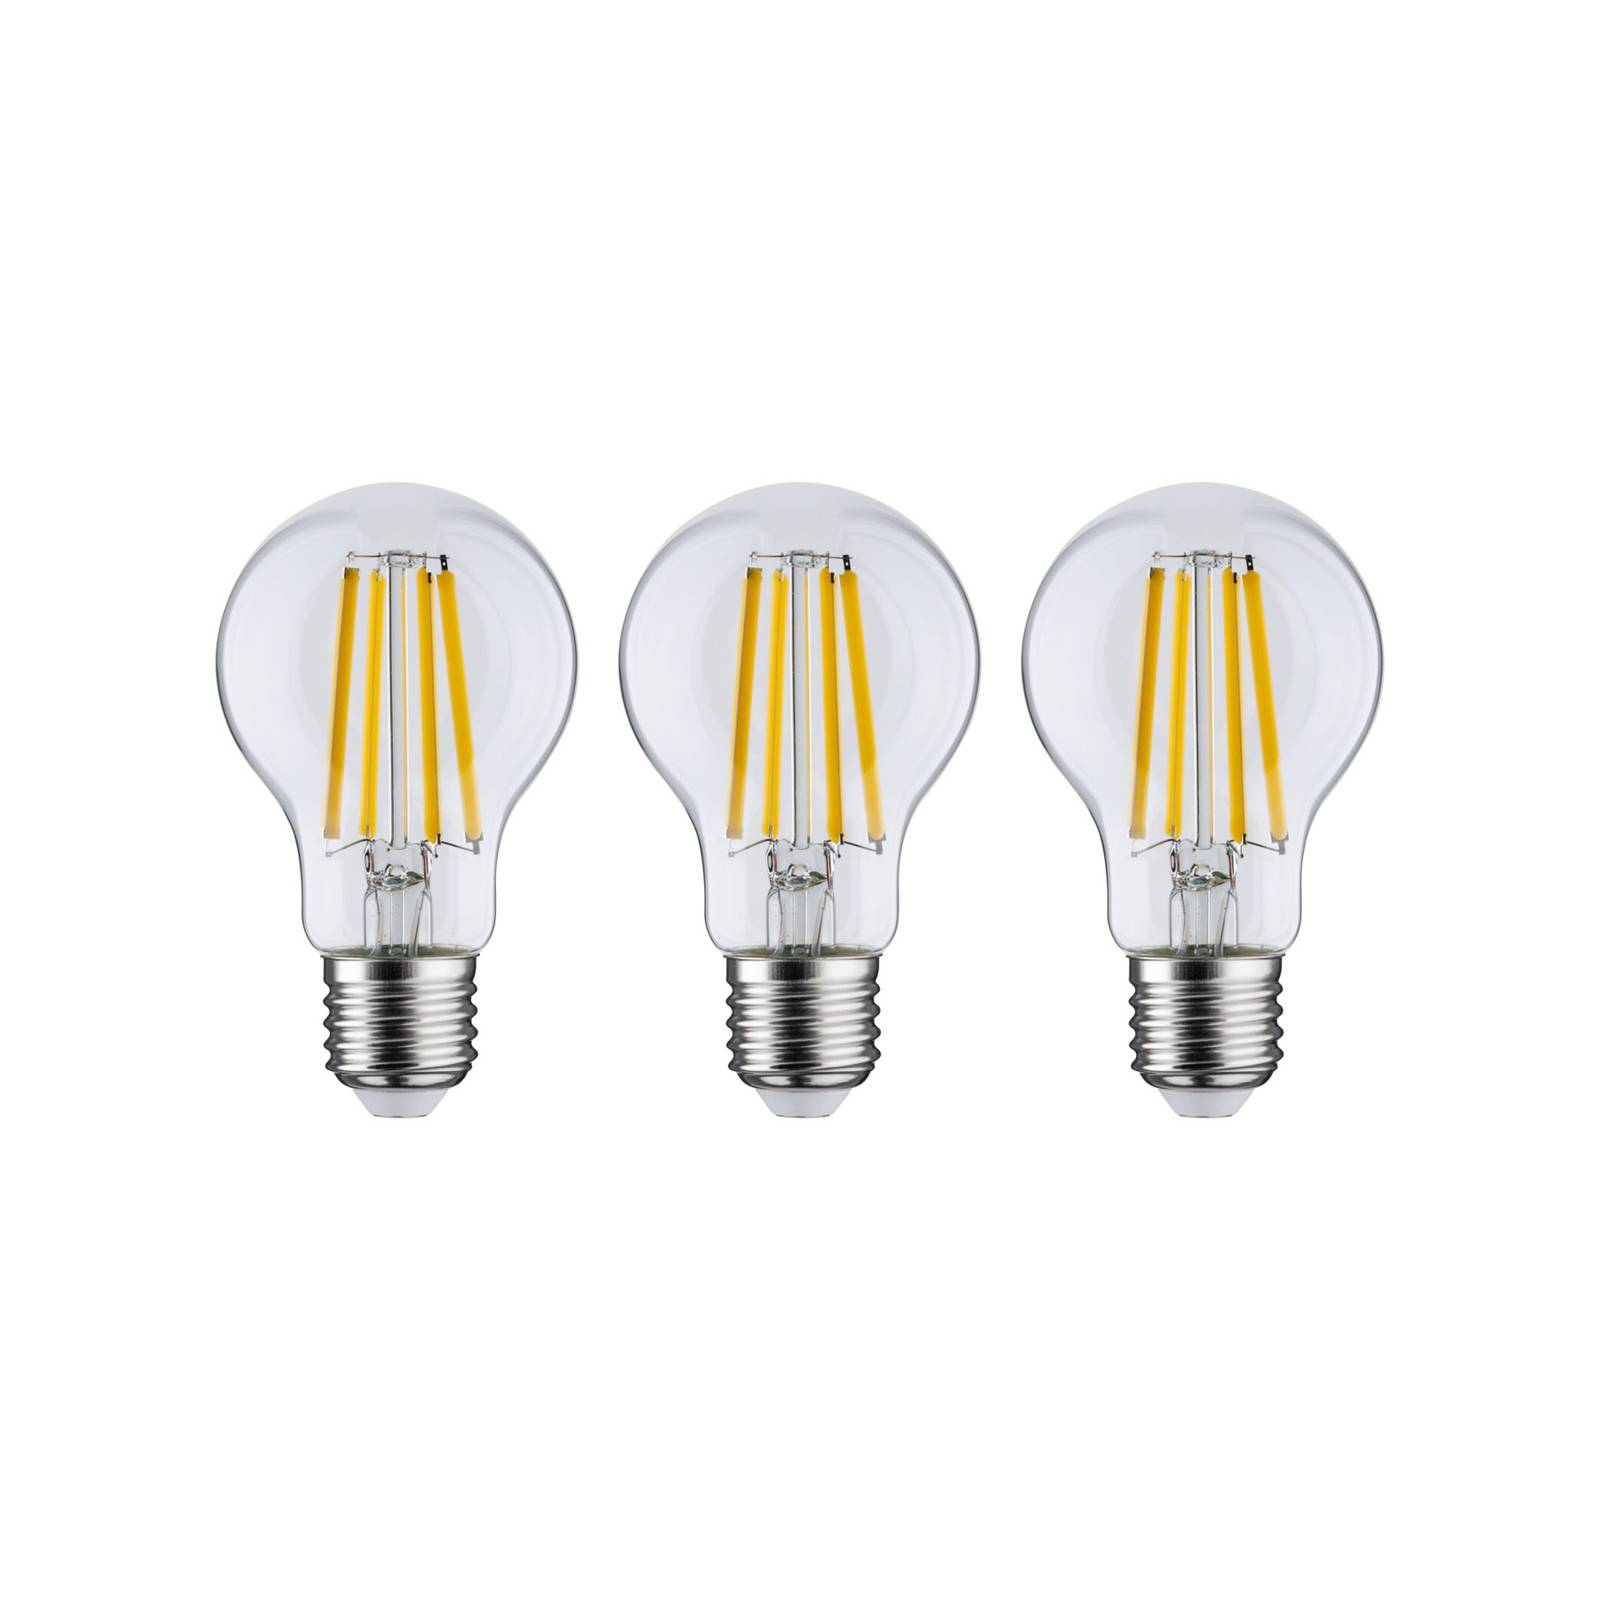 Paulmann Eco-Line LED-Lampe E27 4W 840lm 3000K 3er